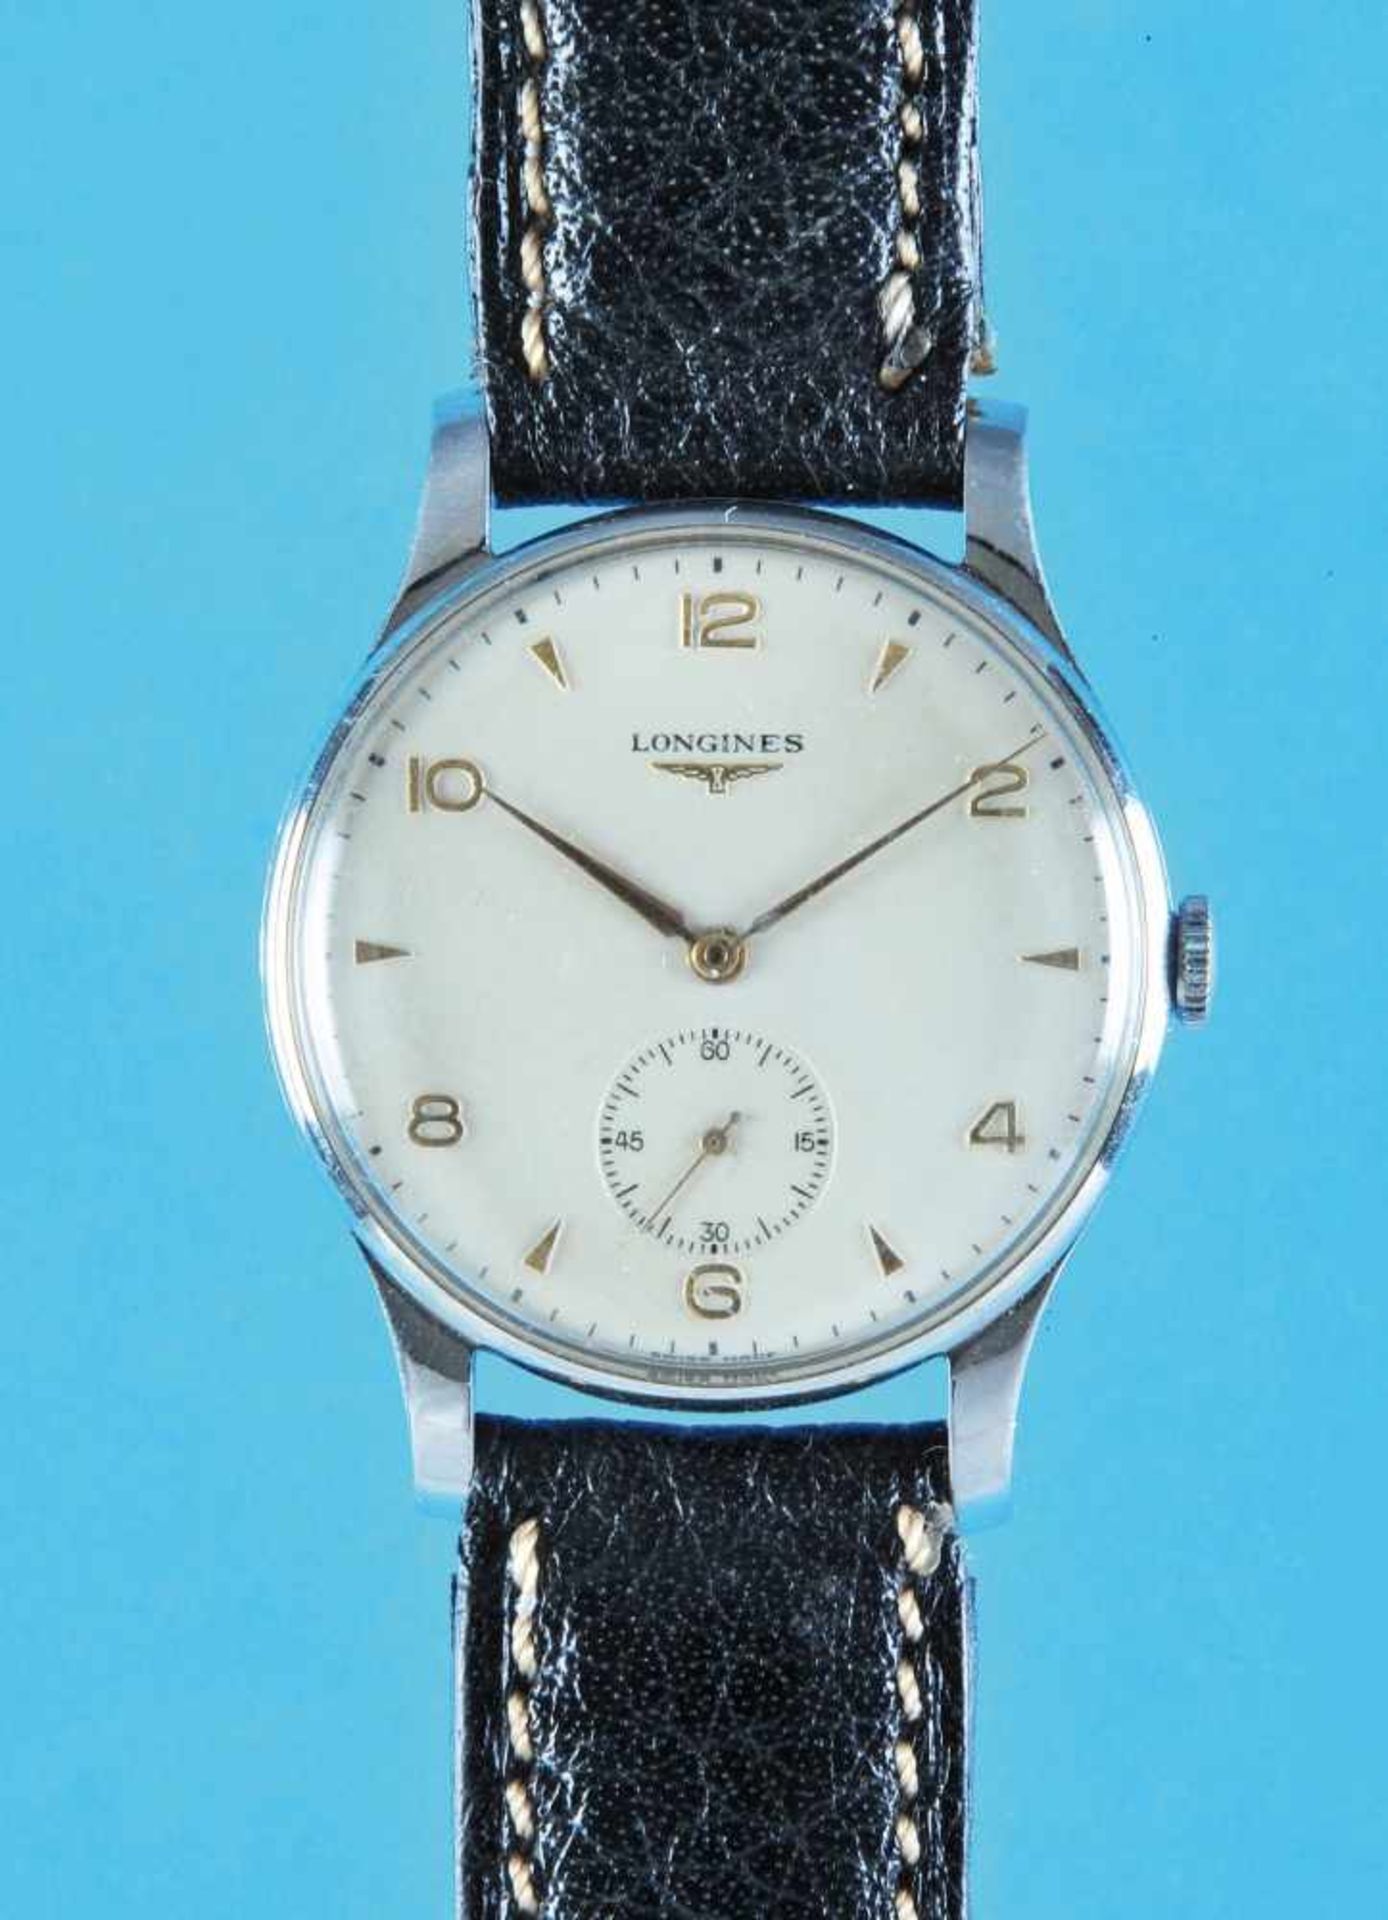 Steel wristwatch LonginesStahlarmbanduhr, Longines, versilbertes Zifferblatt mit arabischen